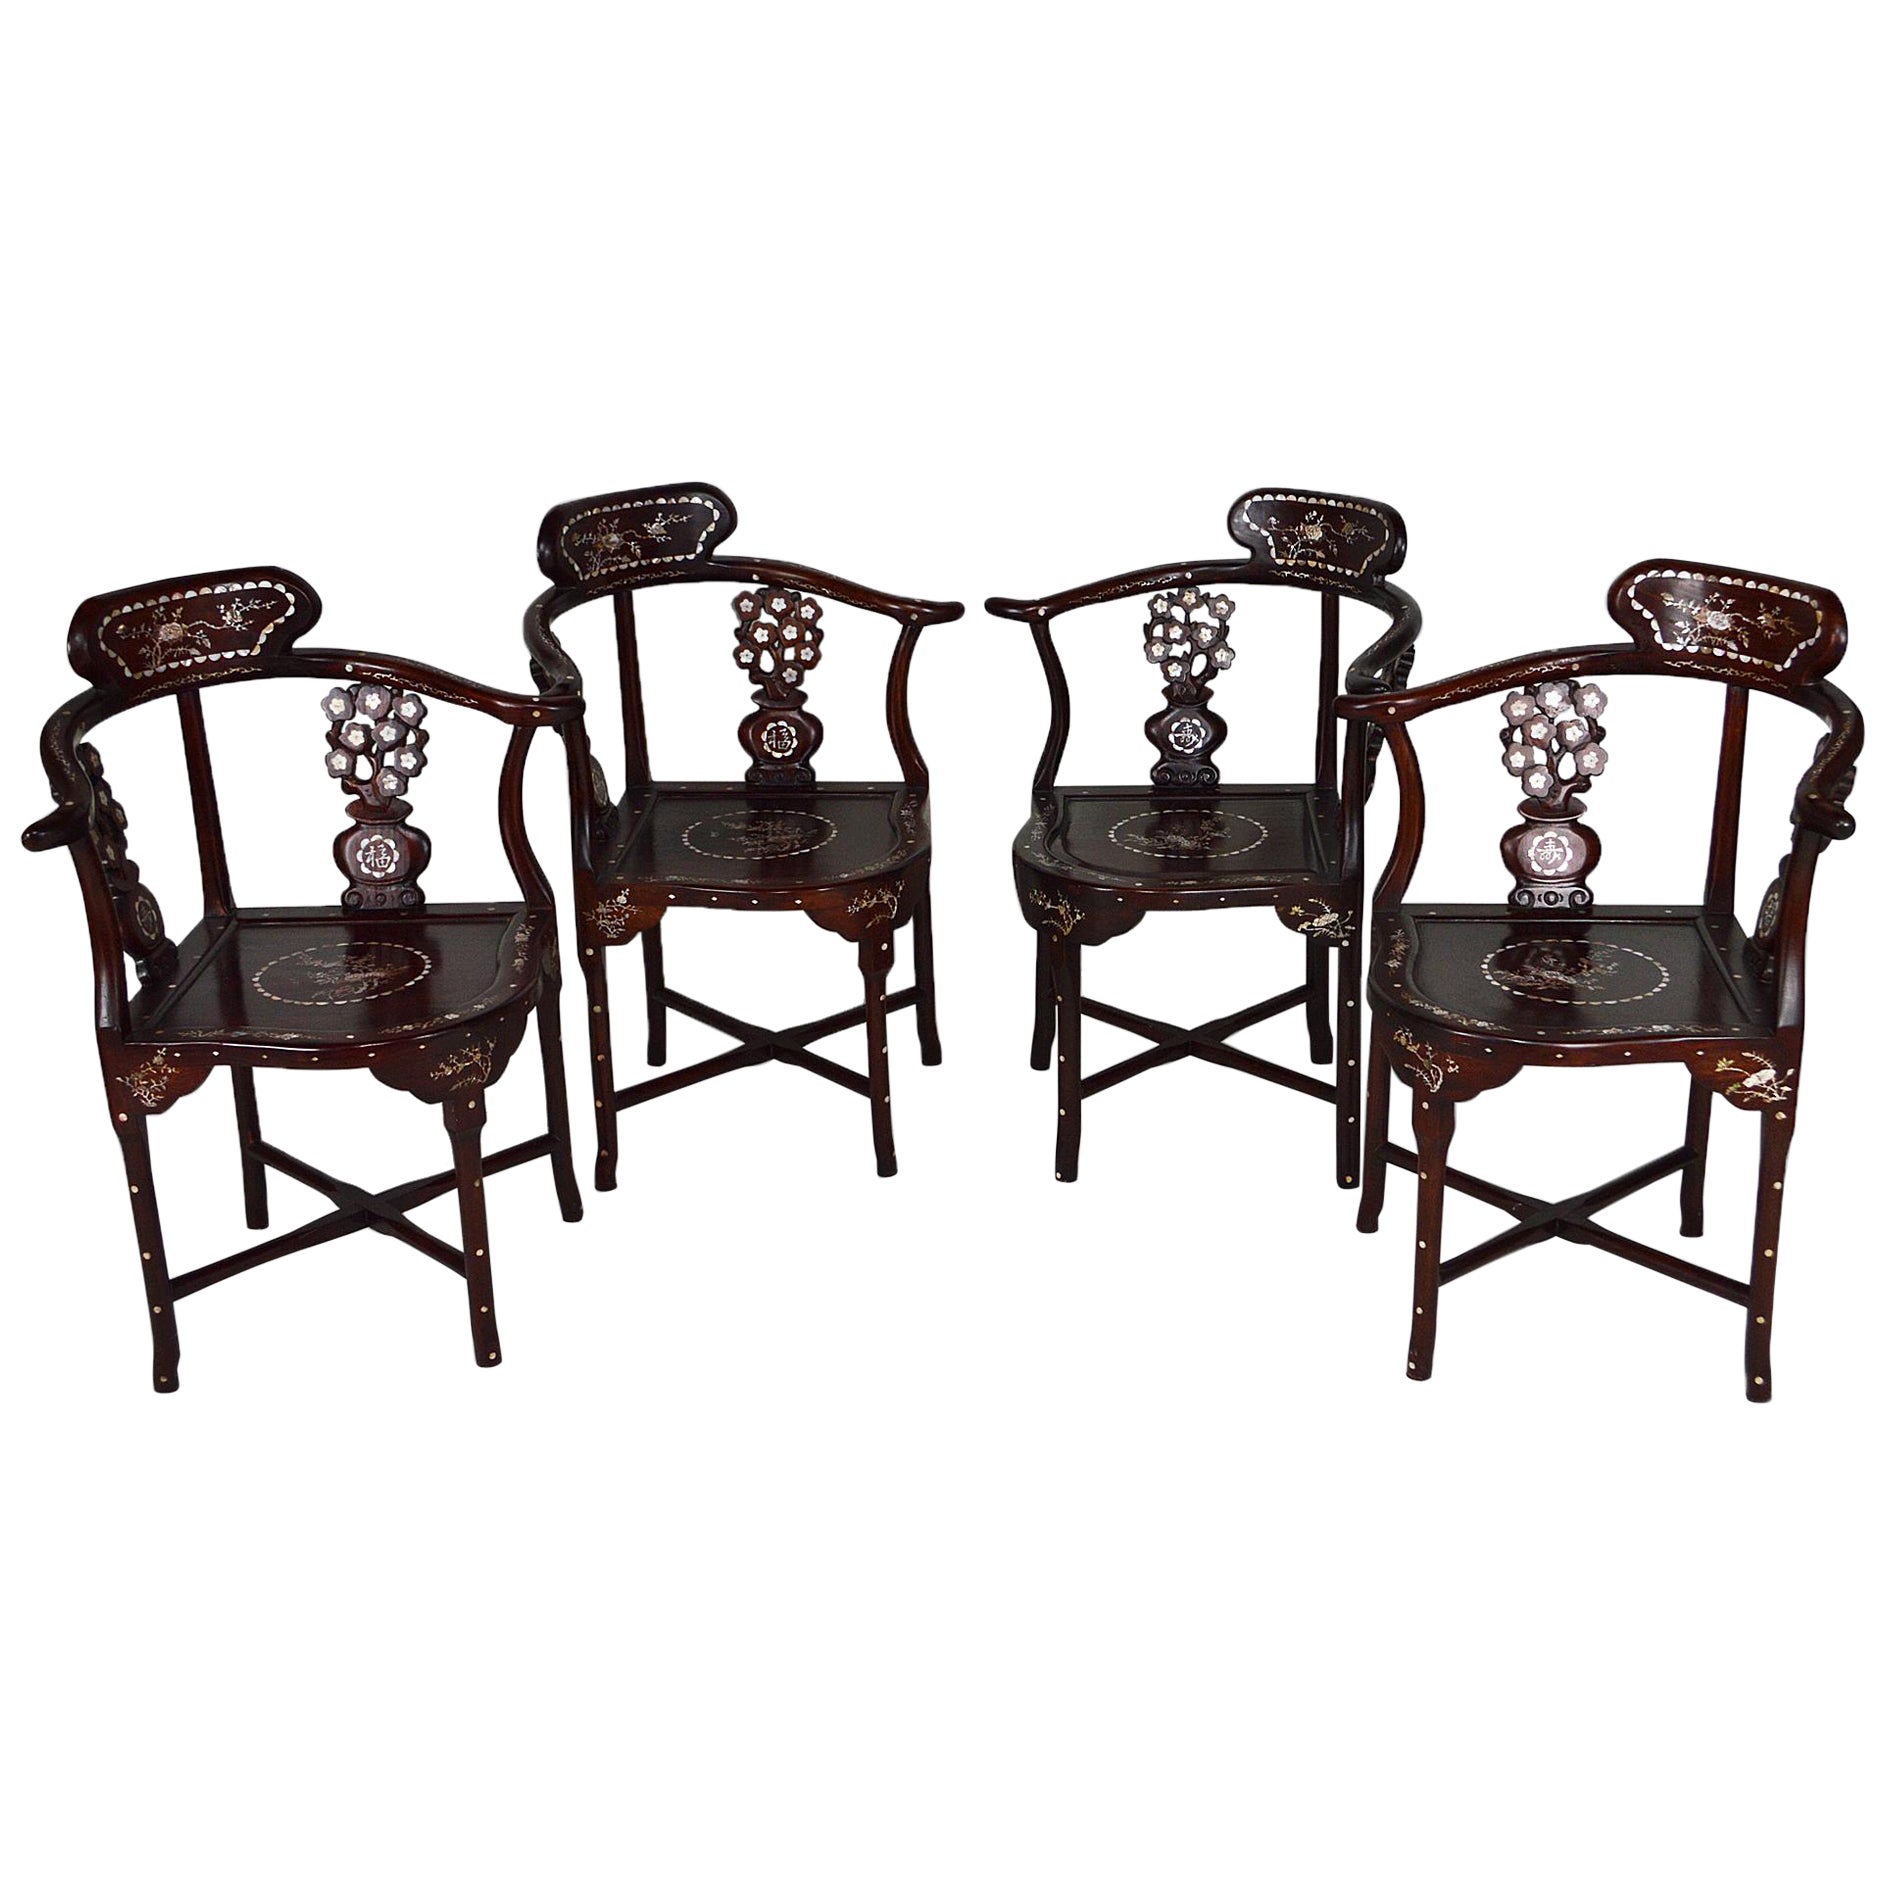 Ensemble de 4 fauteuils asiatiques en bois sculpté et incrusté, vers 1900-1920